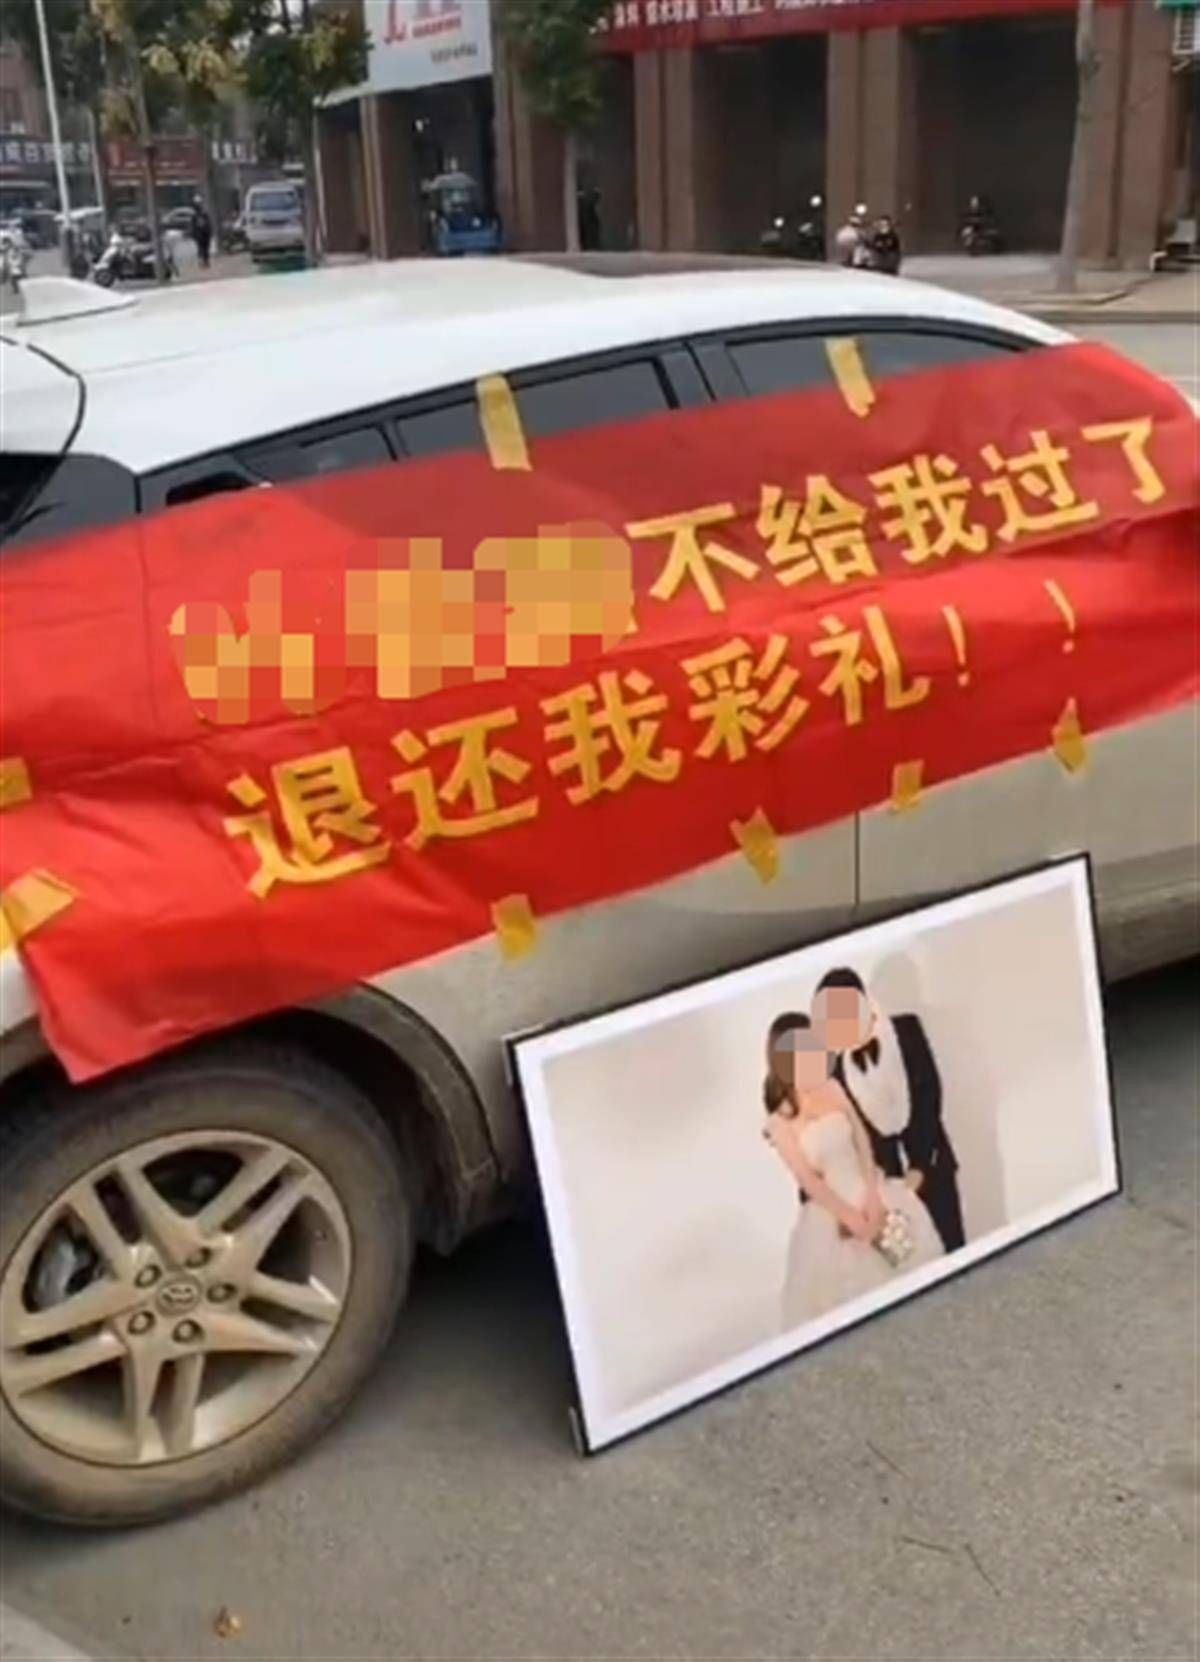 Hou đỗ xe ngoài nhà bố mẹ vợ, căng băng rôn với nội dung đòi trả tiền sính lễ. Ảnh: Weibo